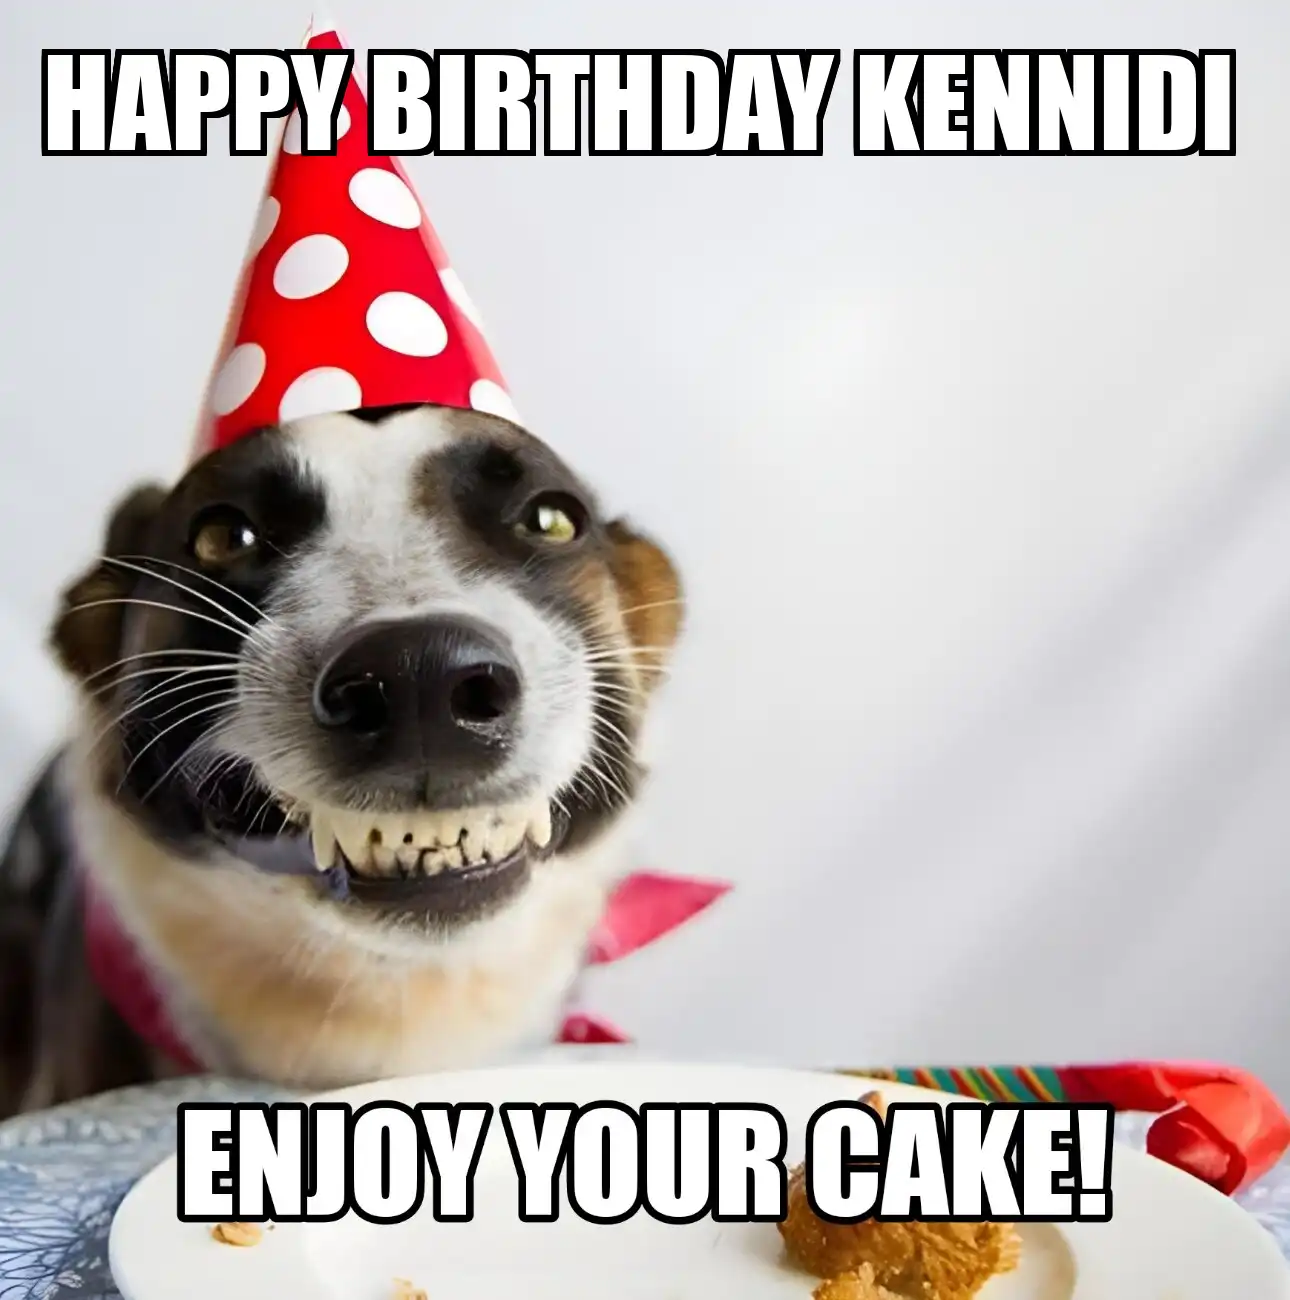 Happy Birthday Kennidi Enjoy Your Cake Dog Meme